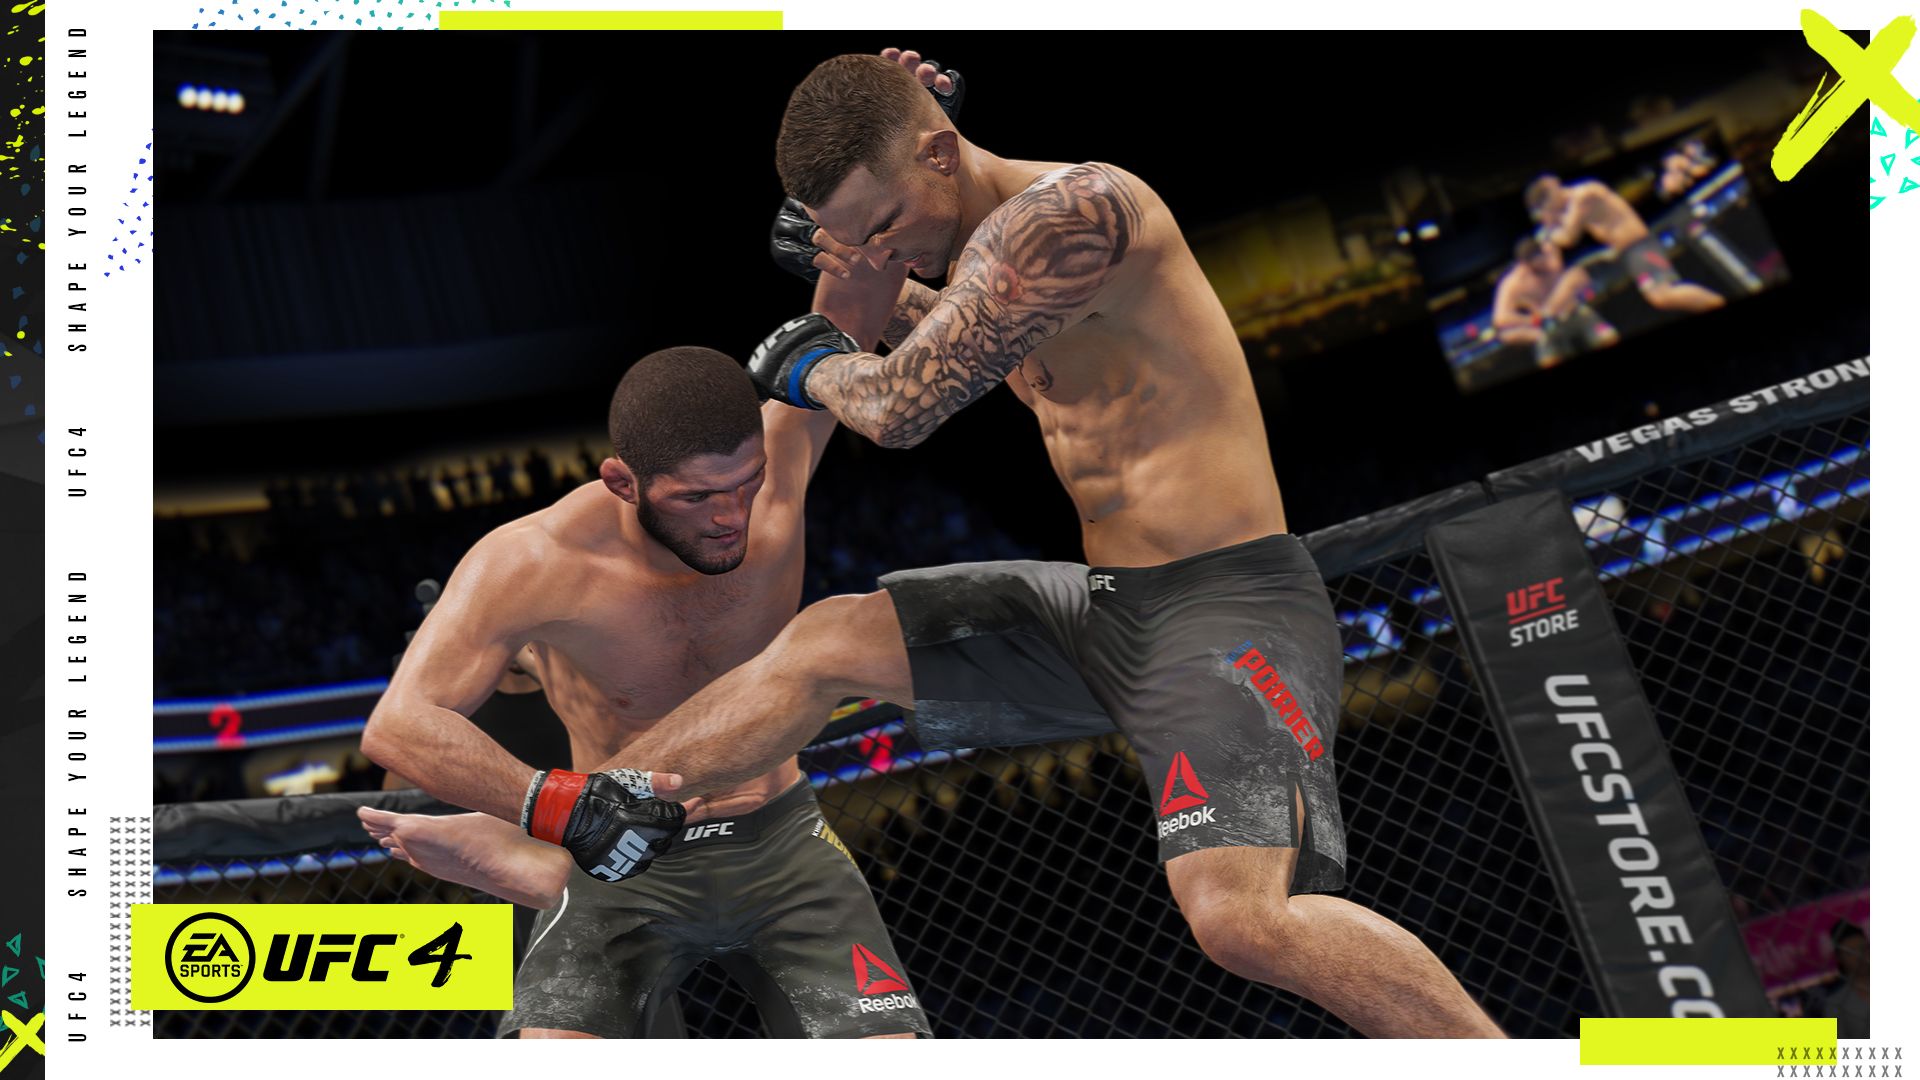 Еа Спорт UFC 4 03